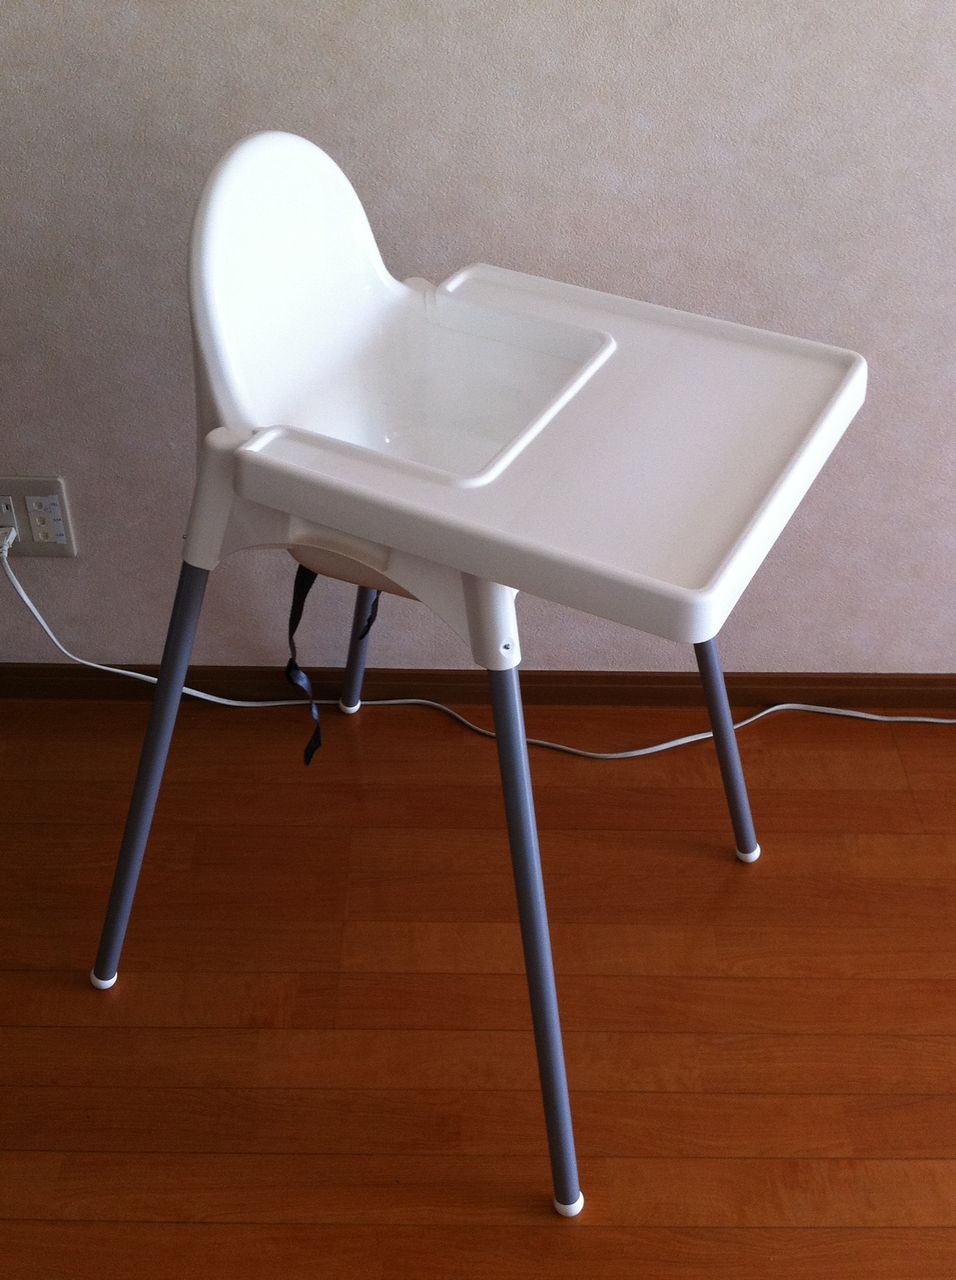 致命的な 突然の 攻撃的 Ikea ベビー 椅子 Assist Life Jp